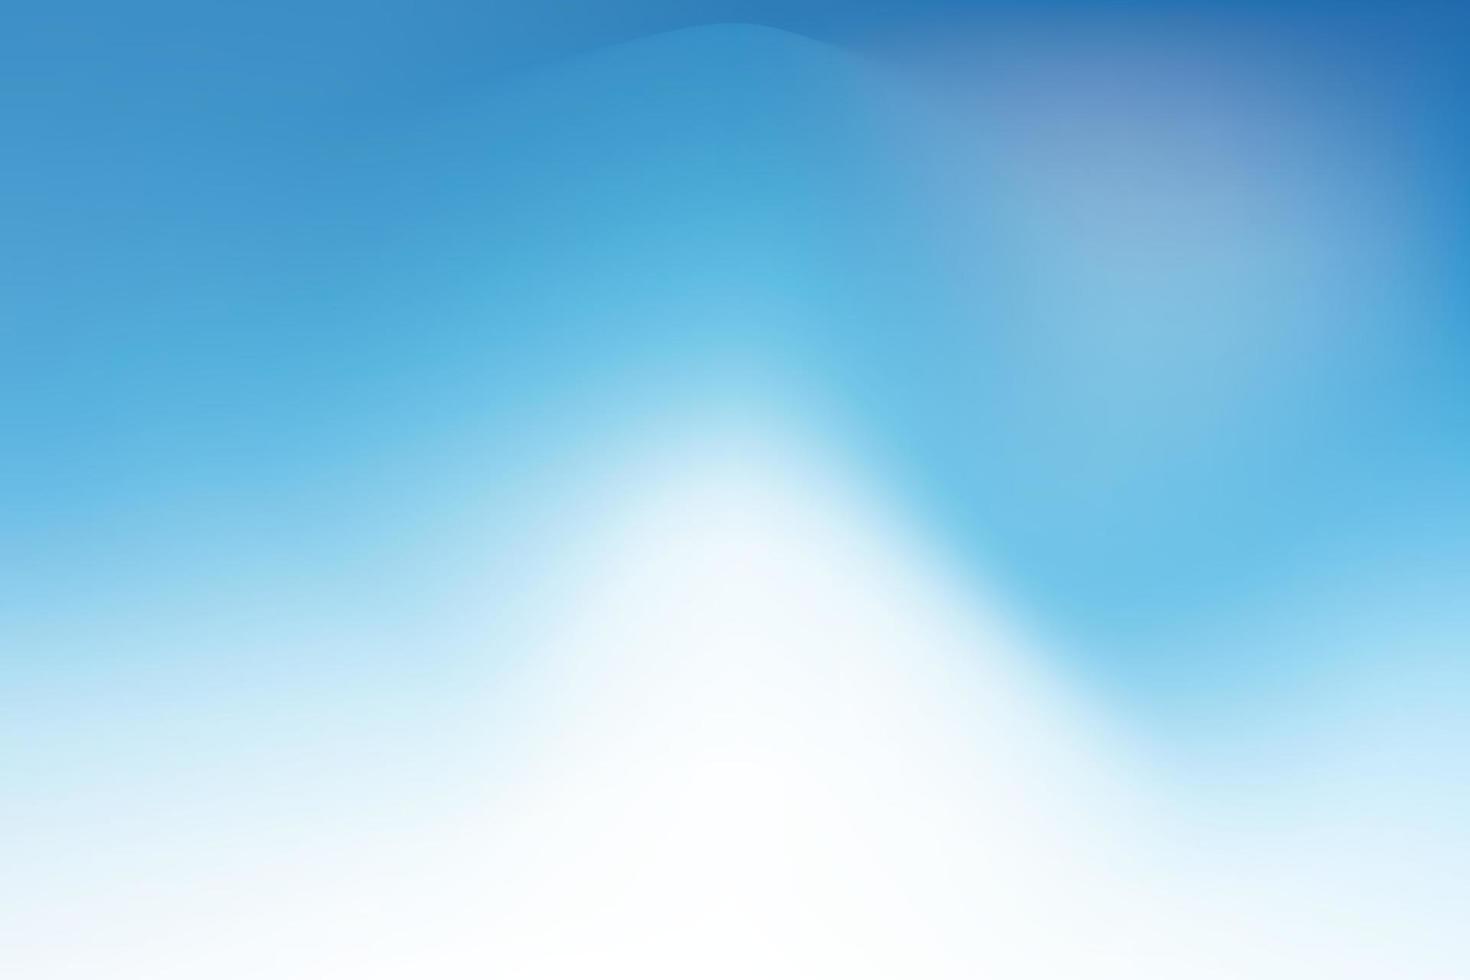 abstract achtergrond met helling in blauw en wit, vector illustratie